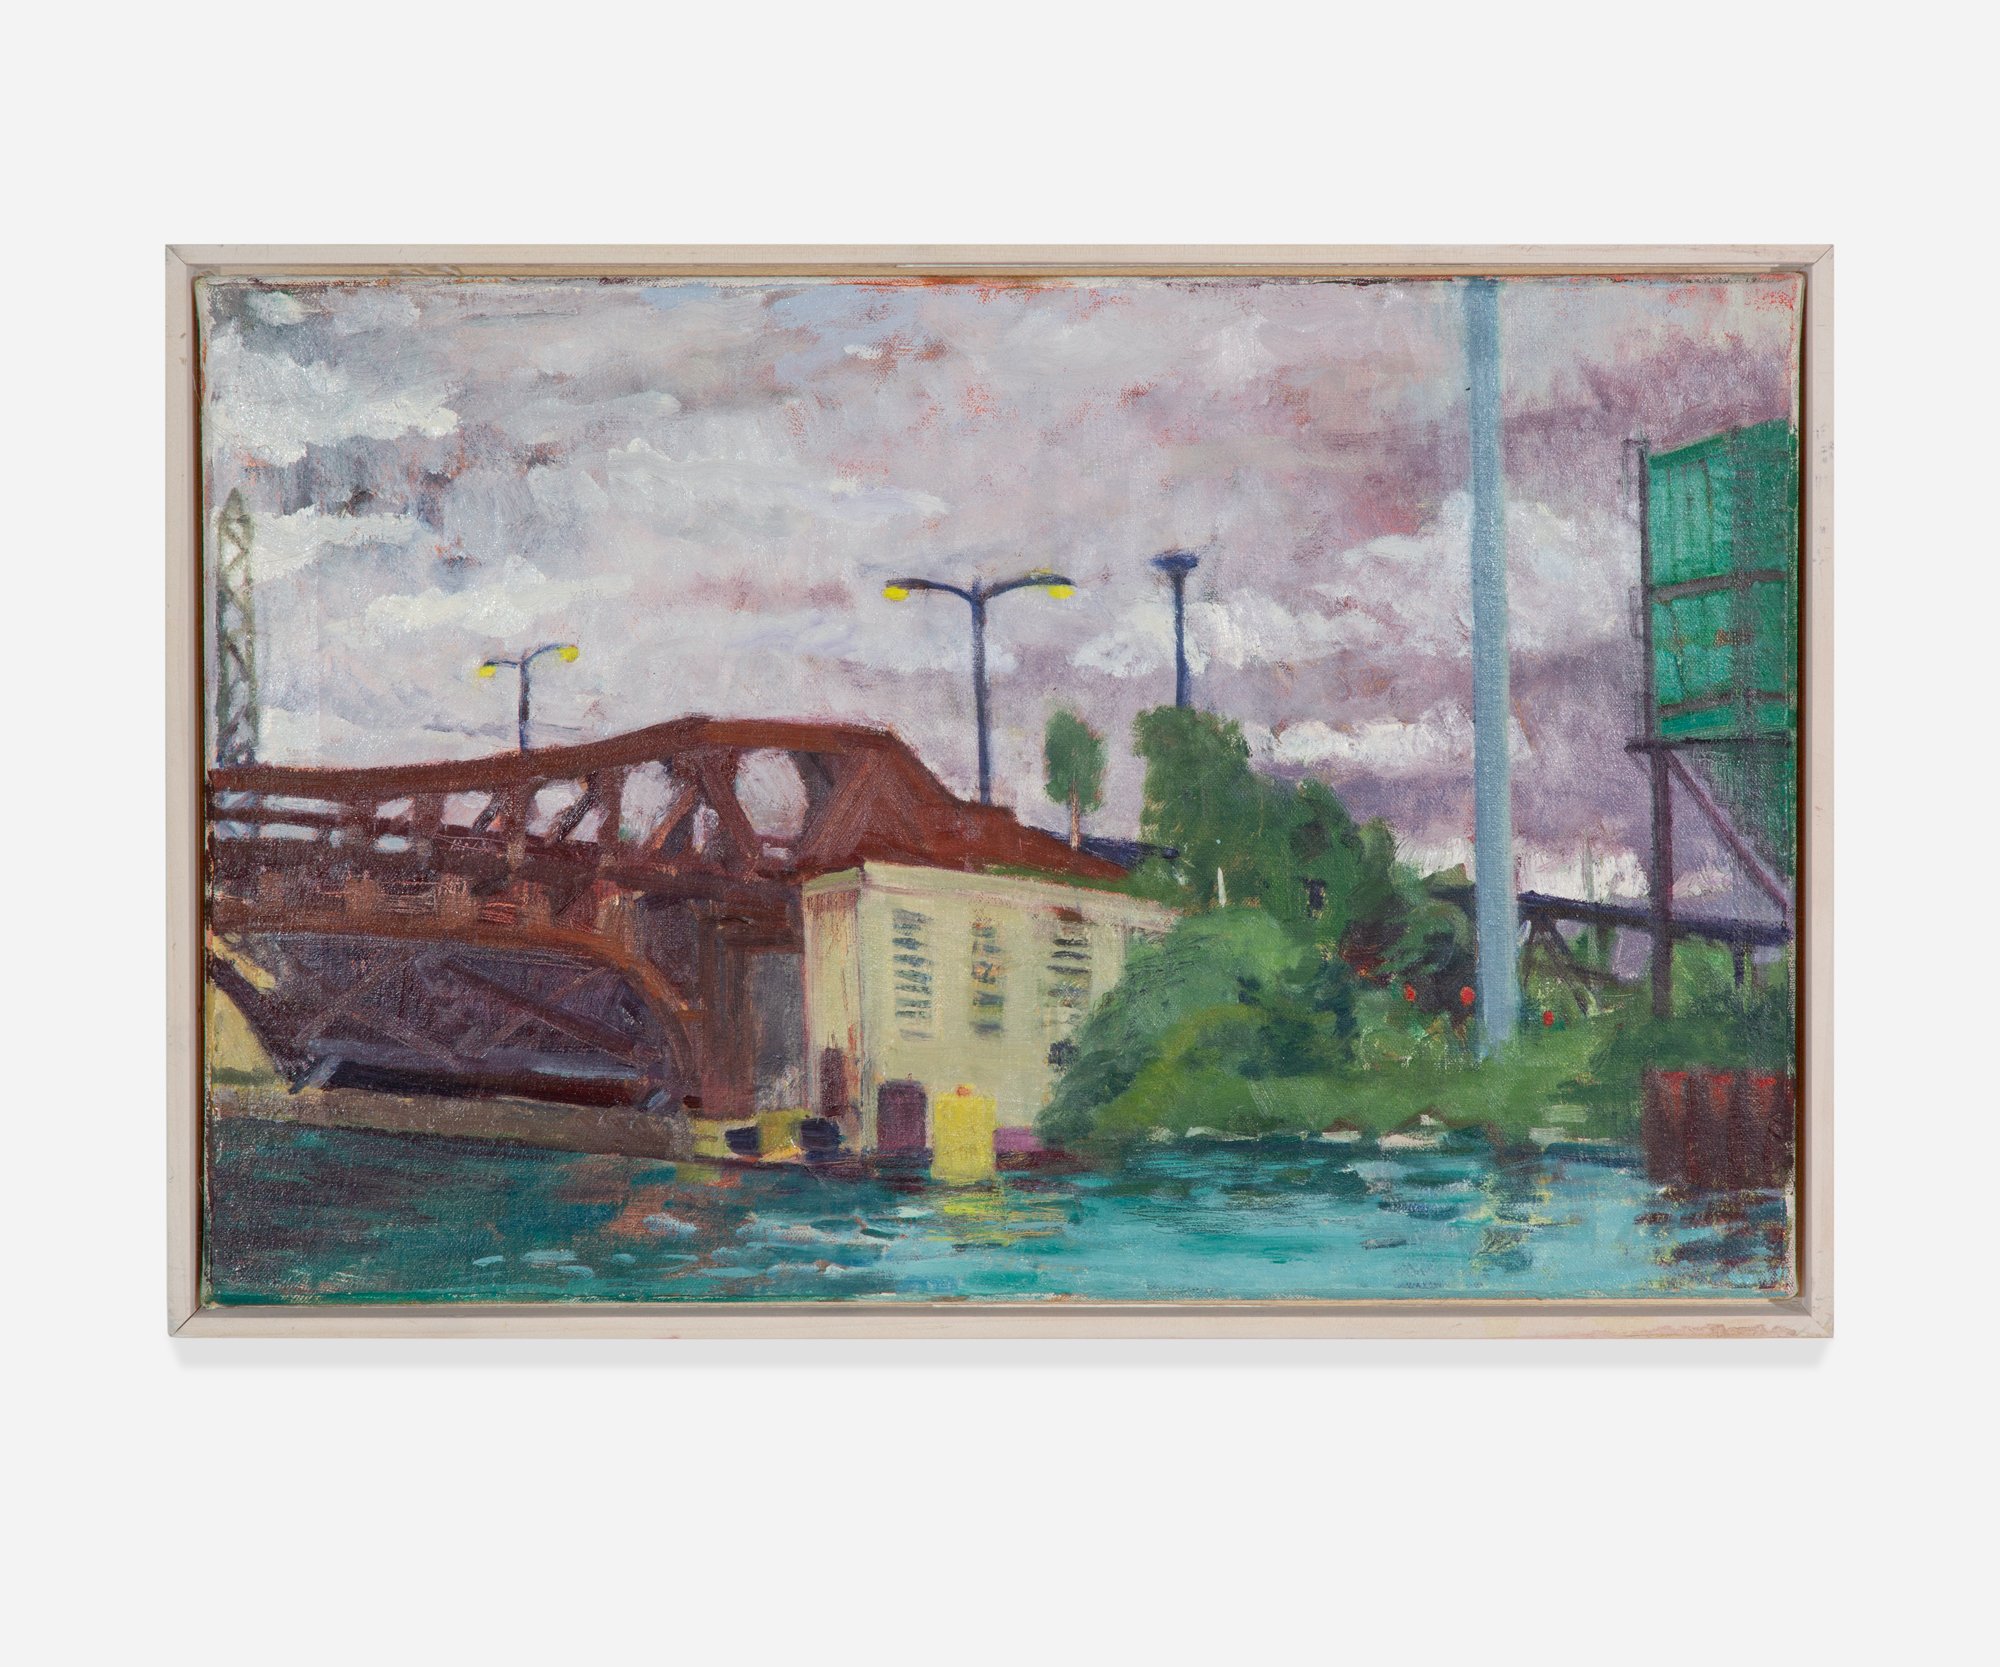   Bridge Over the Cal Sag Canal , 2014, Oil on canvas, 20 x 13”       